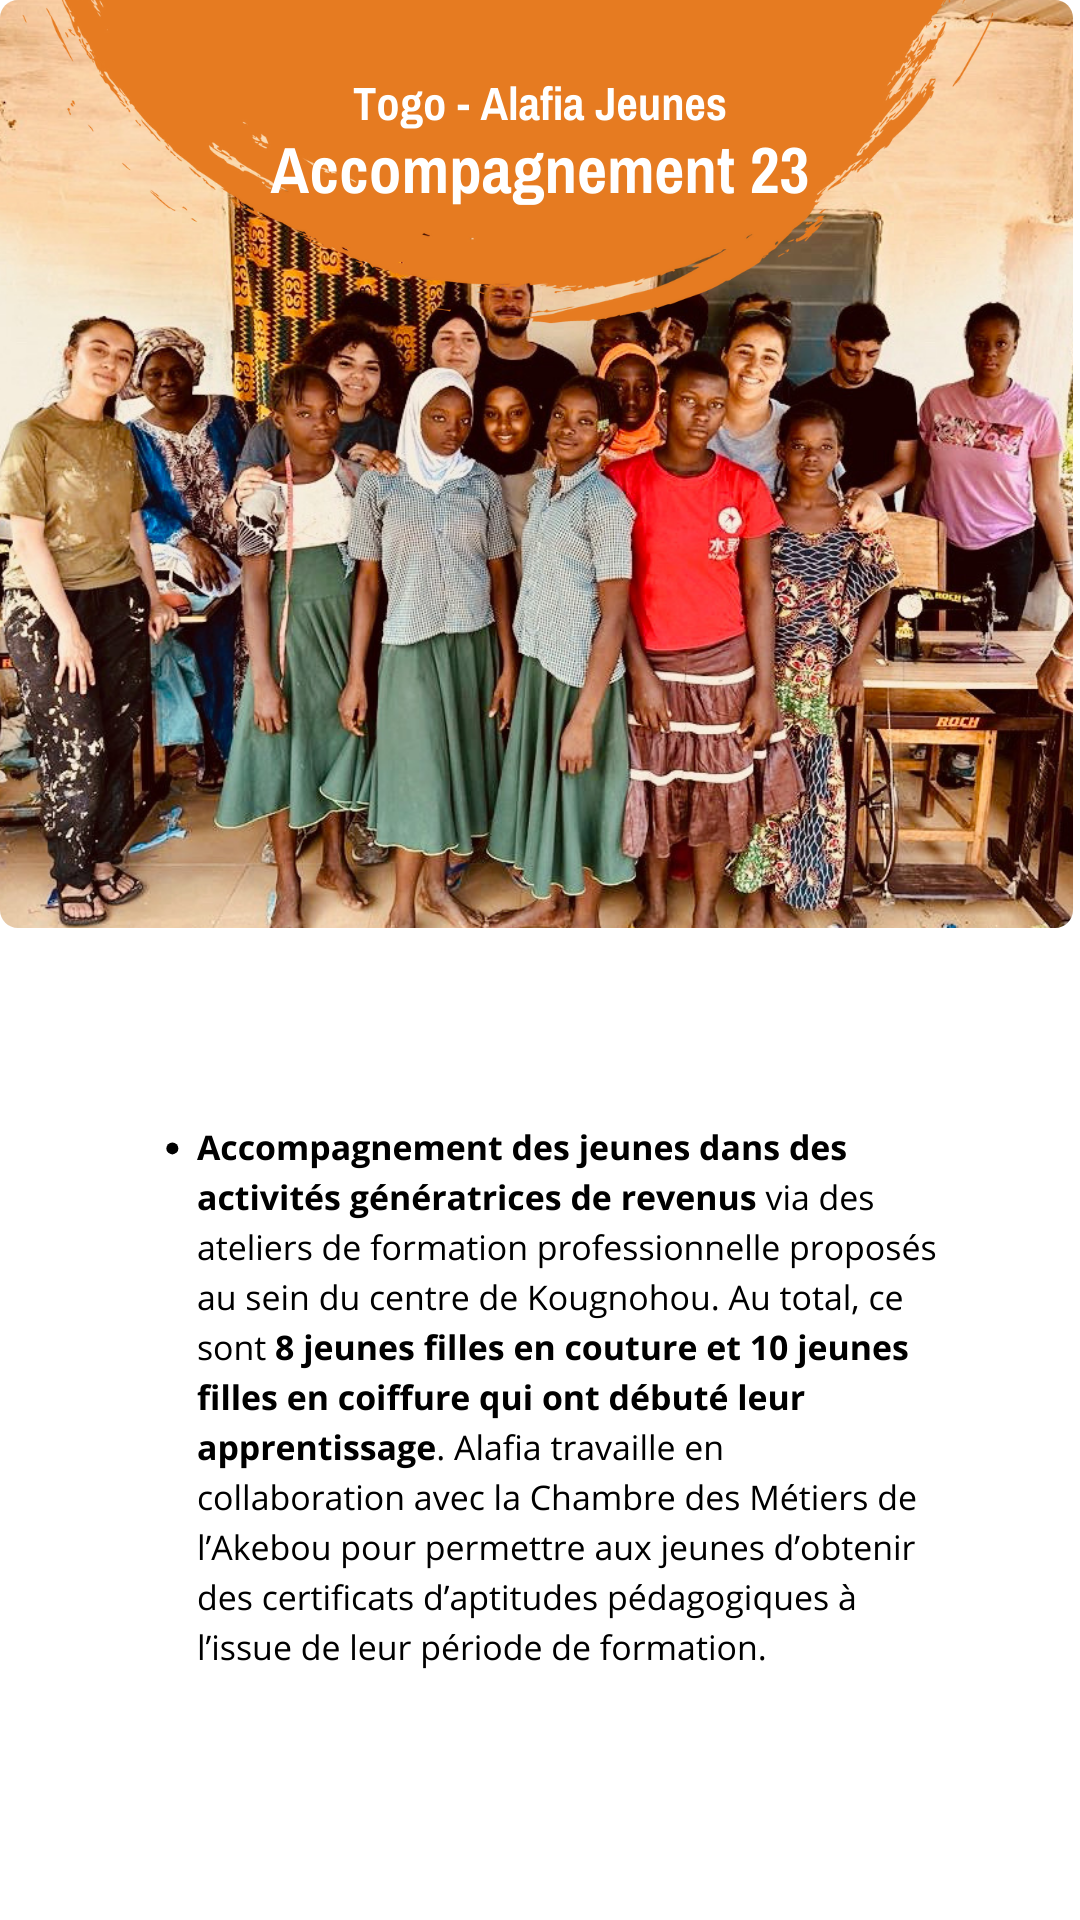 Des nouvelles de nos partenaires au Sud - Togo